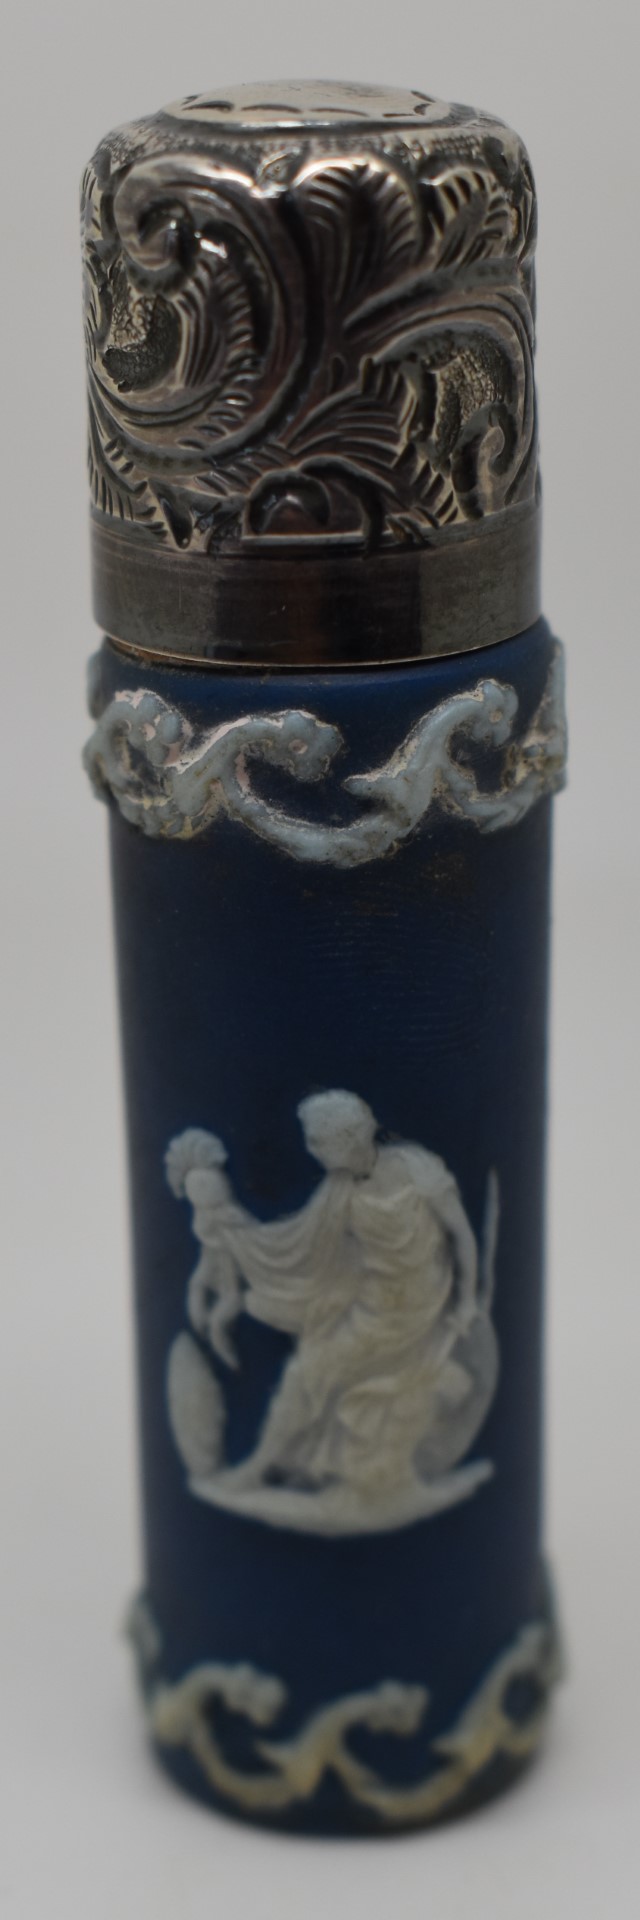 Victorian hallmarked silver lidded Wedgwood or similar porcelain scent bottle, Birmingham 1989 maker